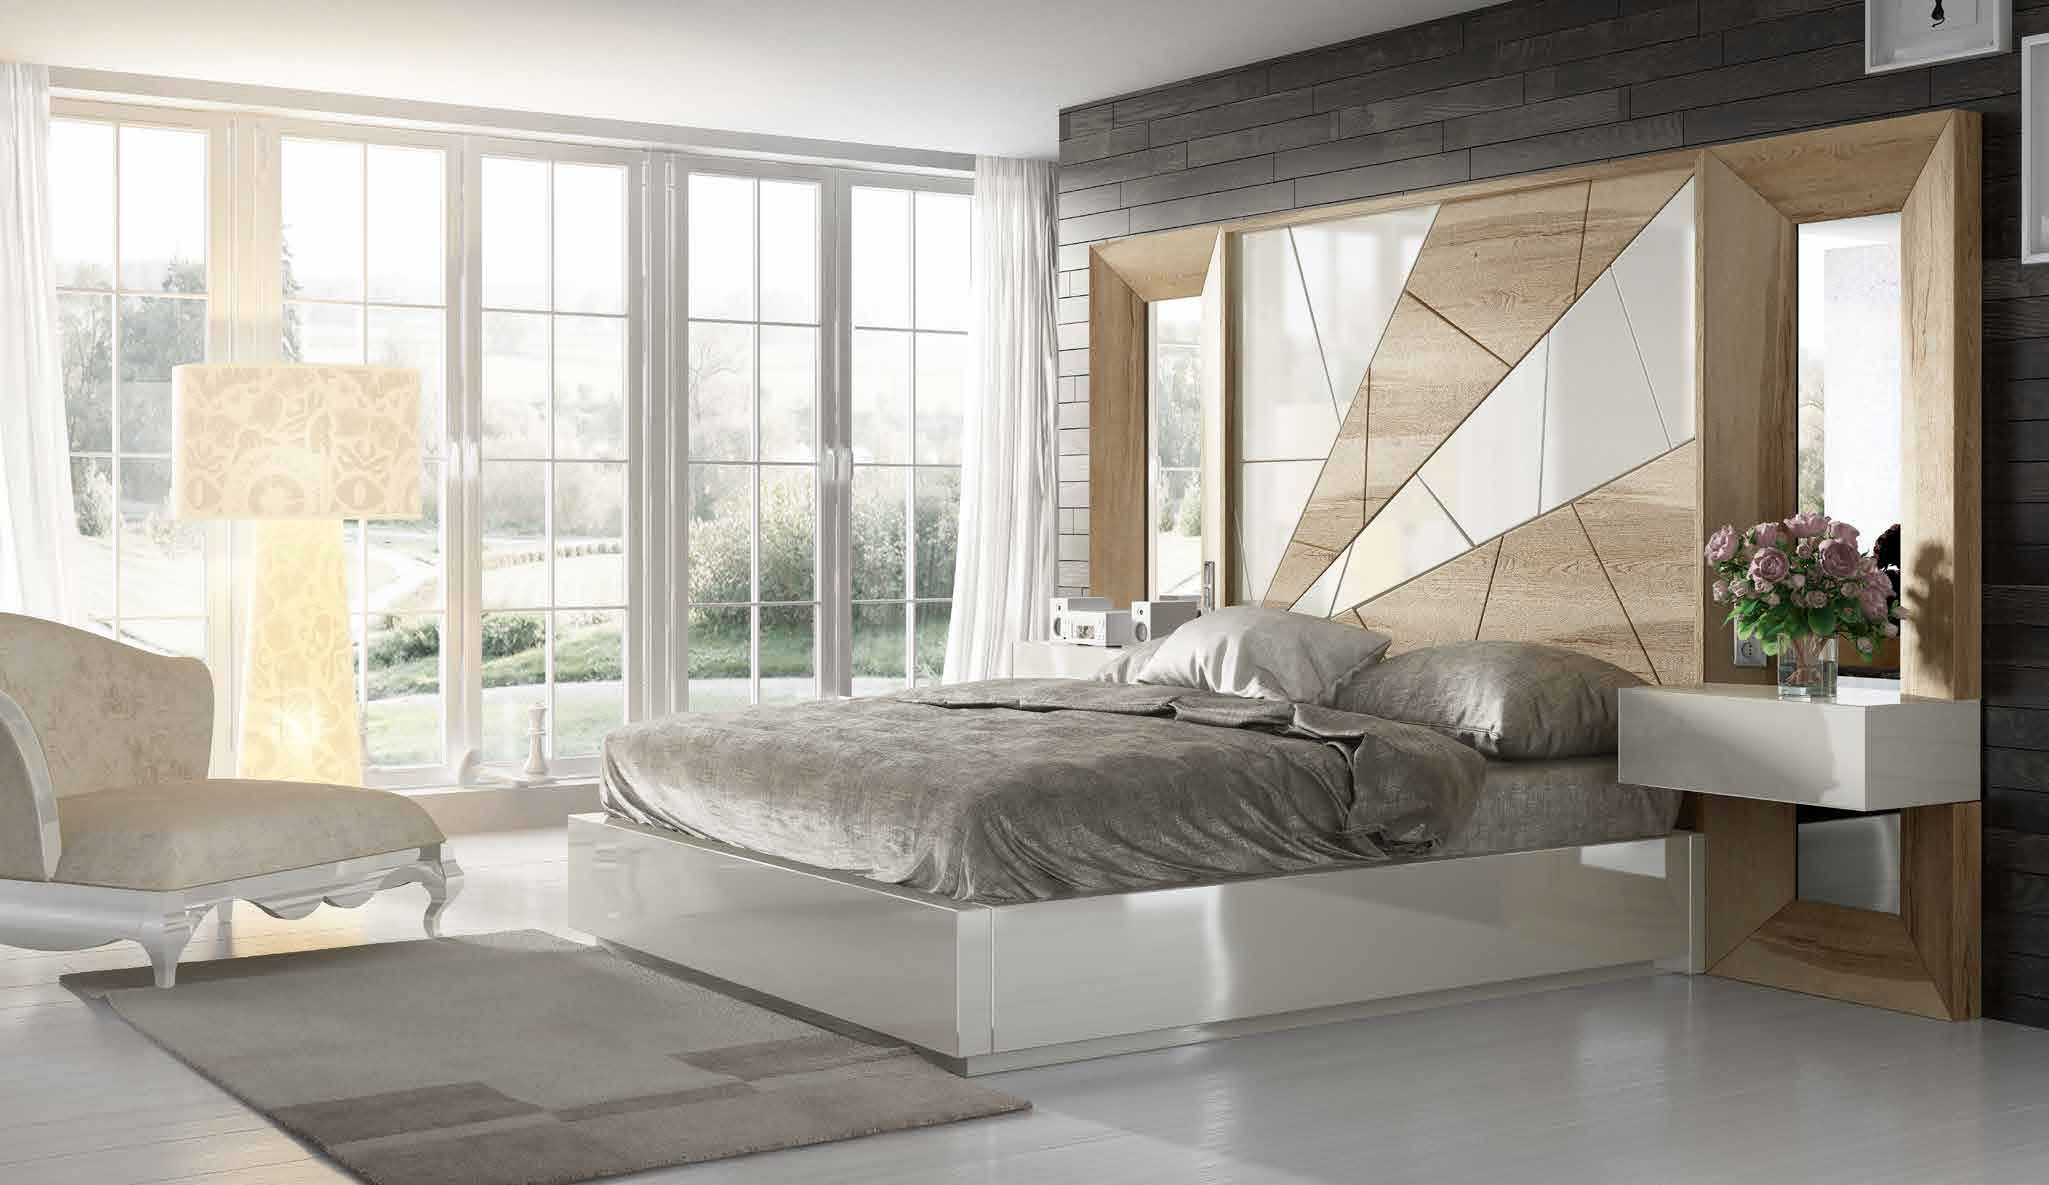 Brands Franco Furniture Avanty Bedrooms, Spain DOR 32